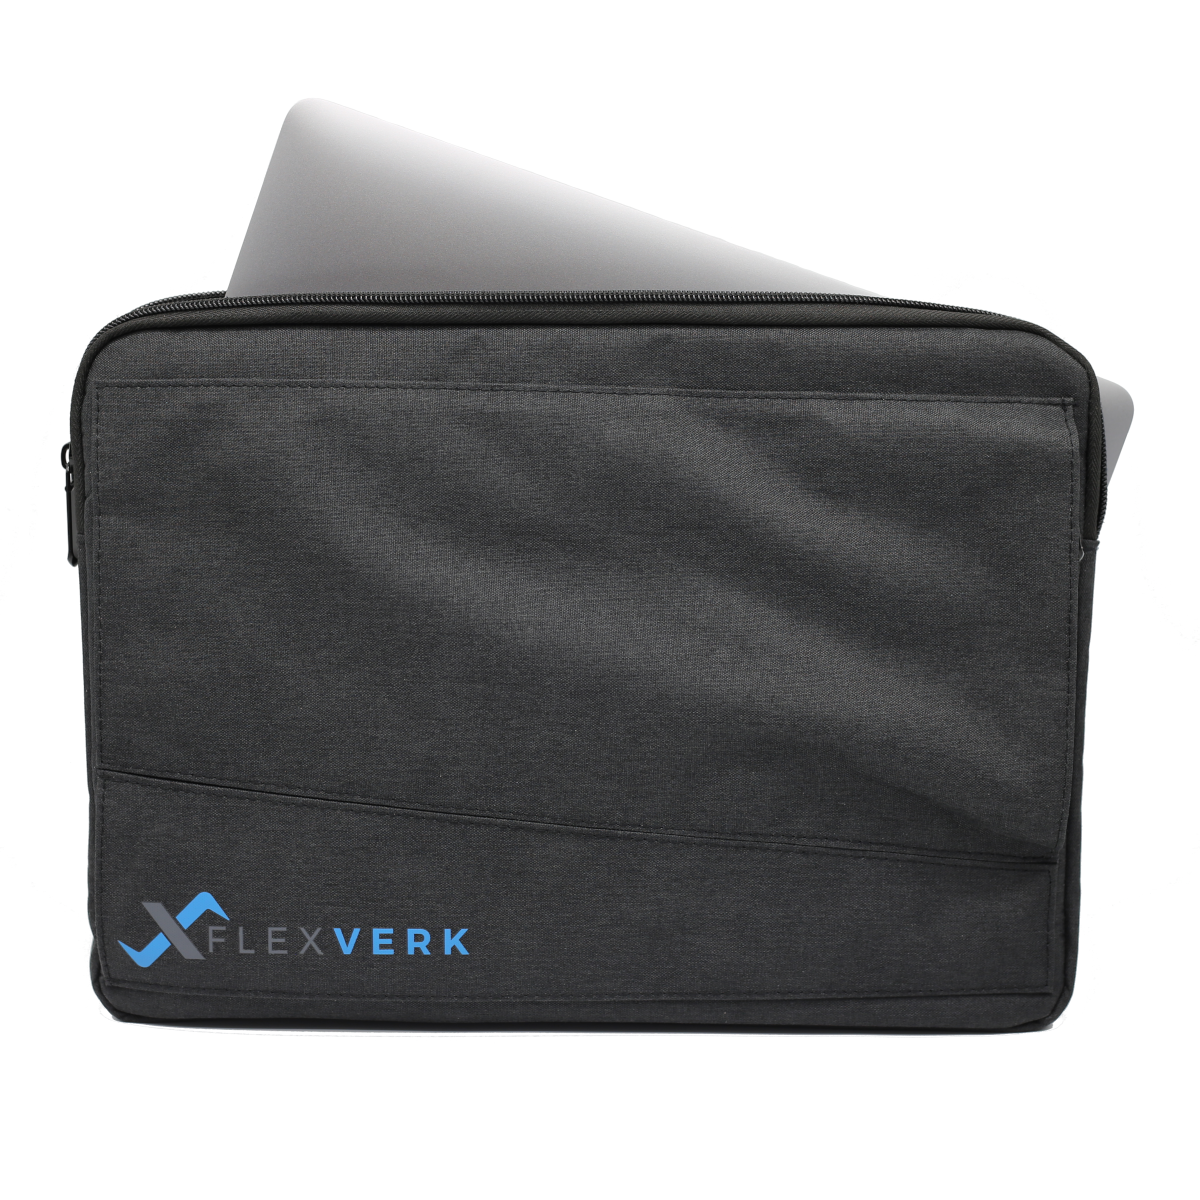 FlexVerk Travel Pack